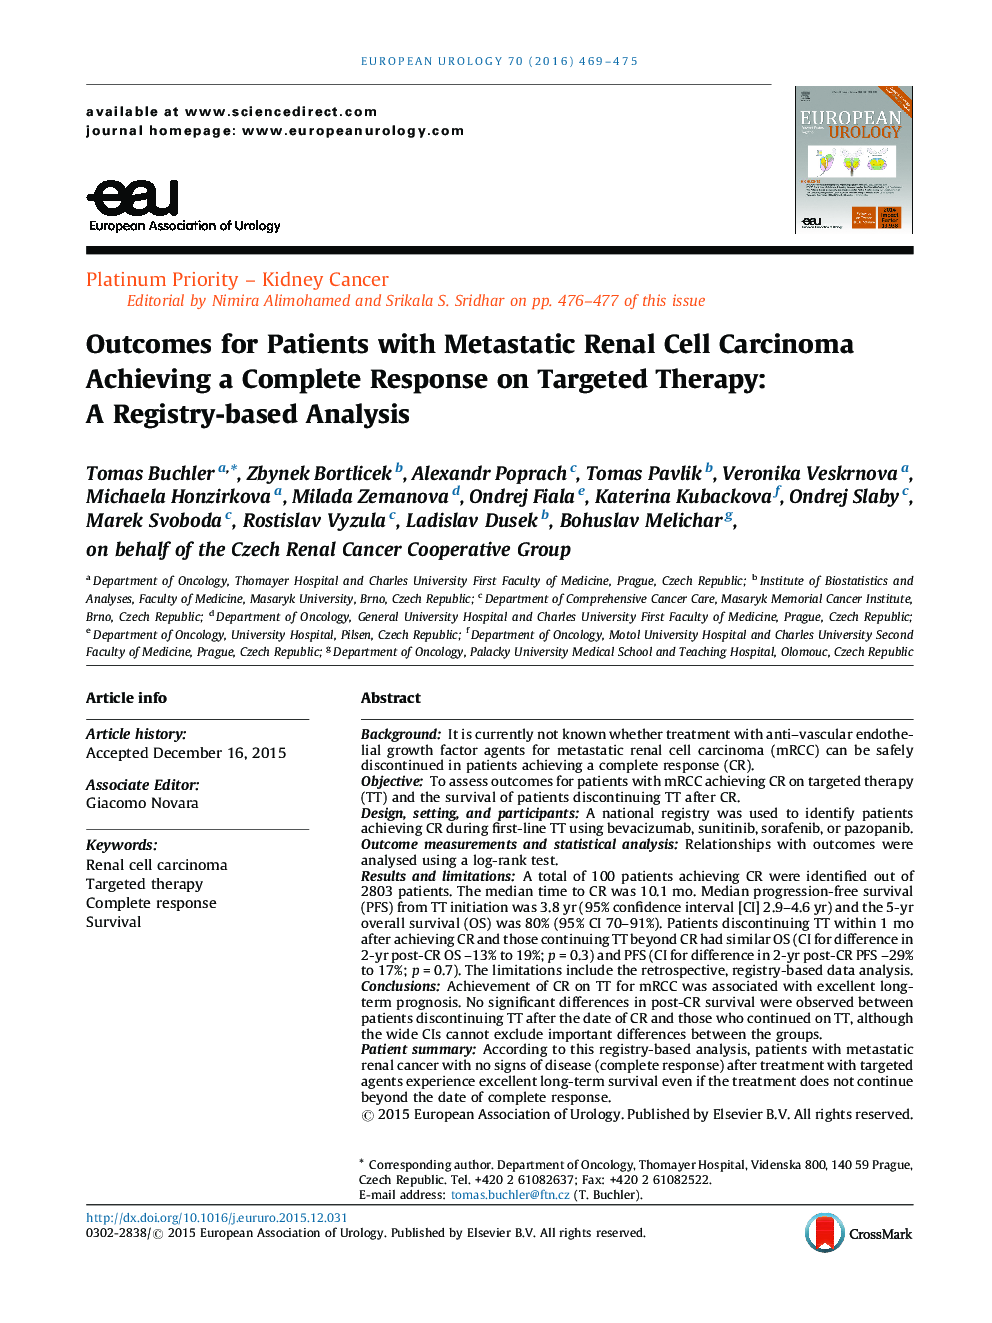 نتایج برای بیماران مبتلا به کارسینوم سلولهای متاستاتیک کلیه دستیابی به یک پاسخ کامل در مورد درمان هدفمند: یک تجزیه و تحلیل مبتنی بر رجیستری 